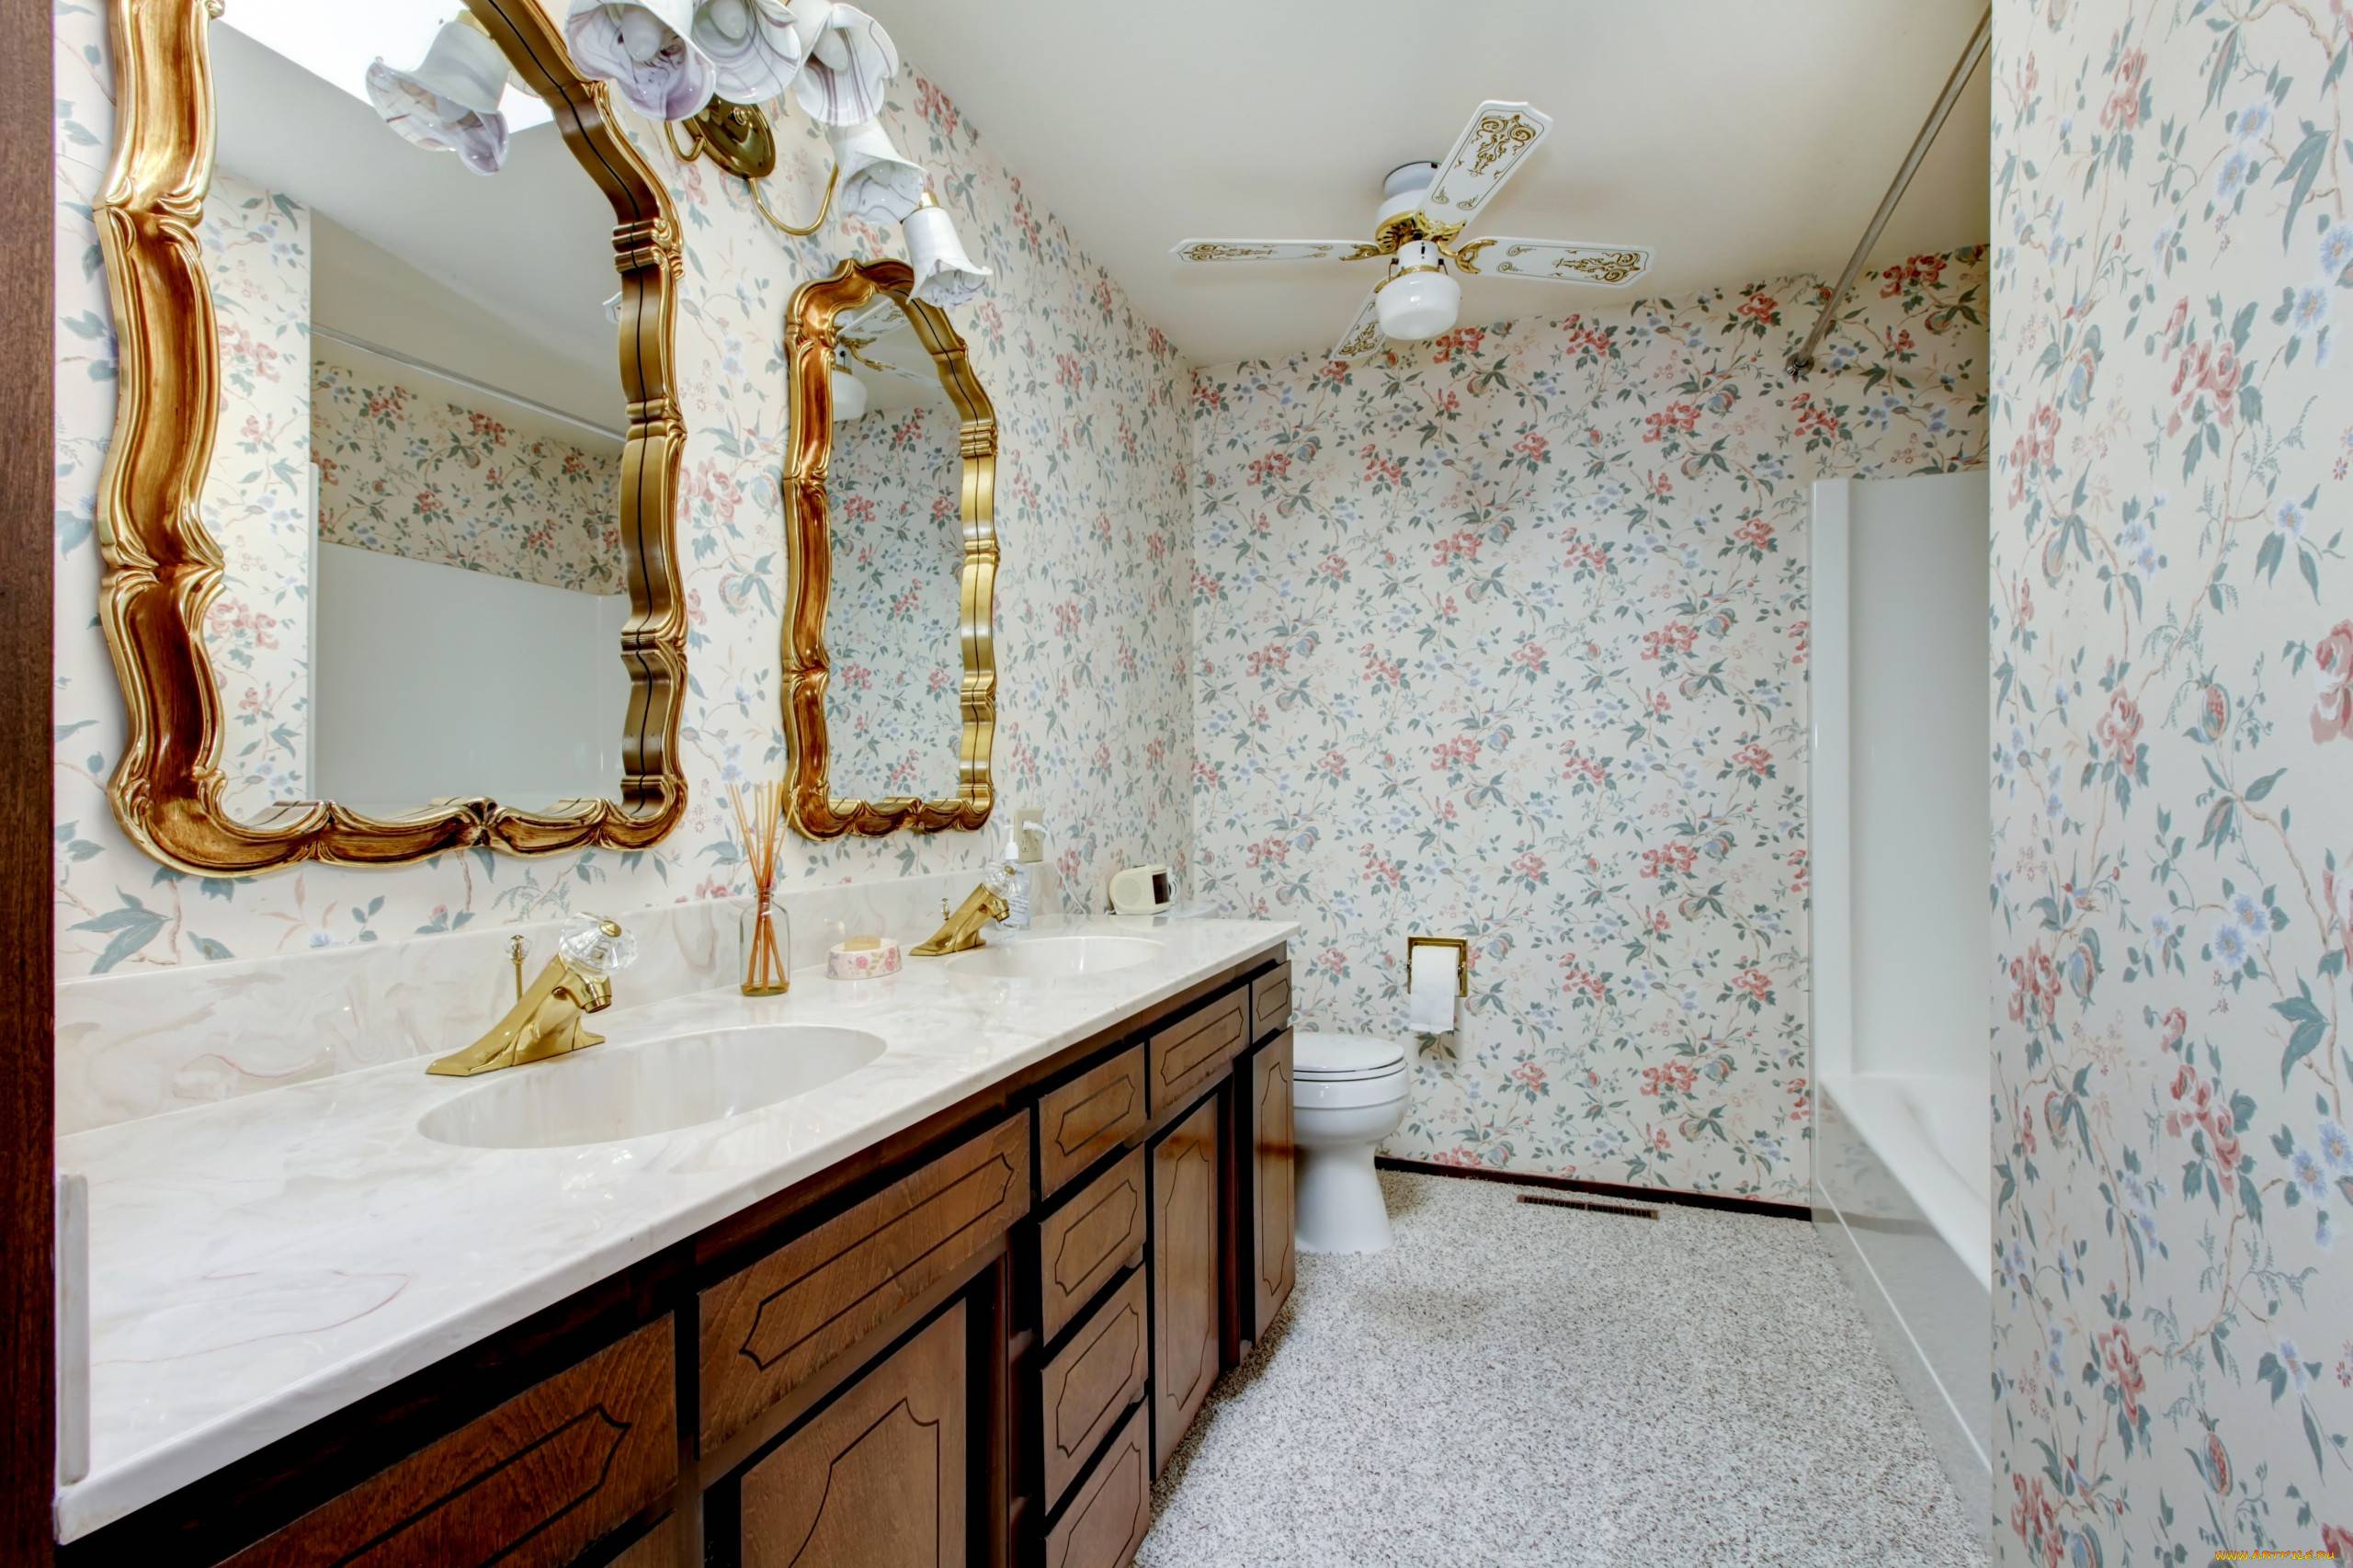 Обои в ванной комнате: фото жидких, виниловых и флизилиновых обоев в интерьере ванной, особенности выбора и нанесения